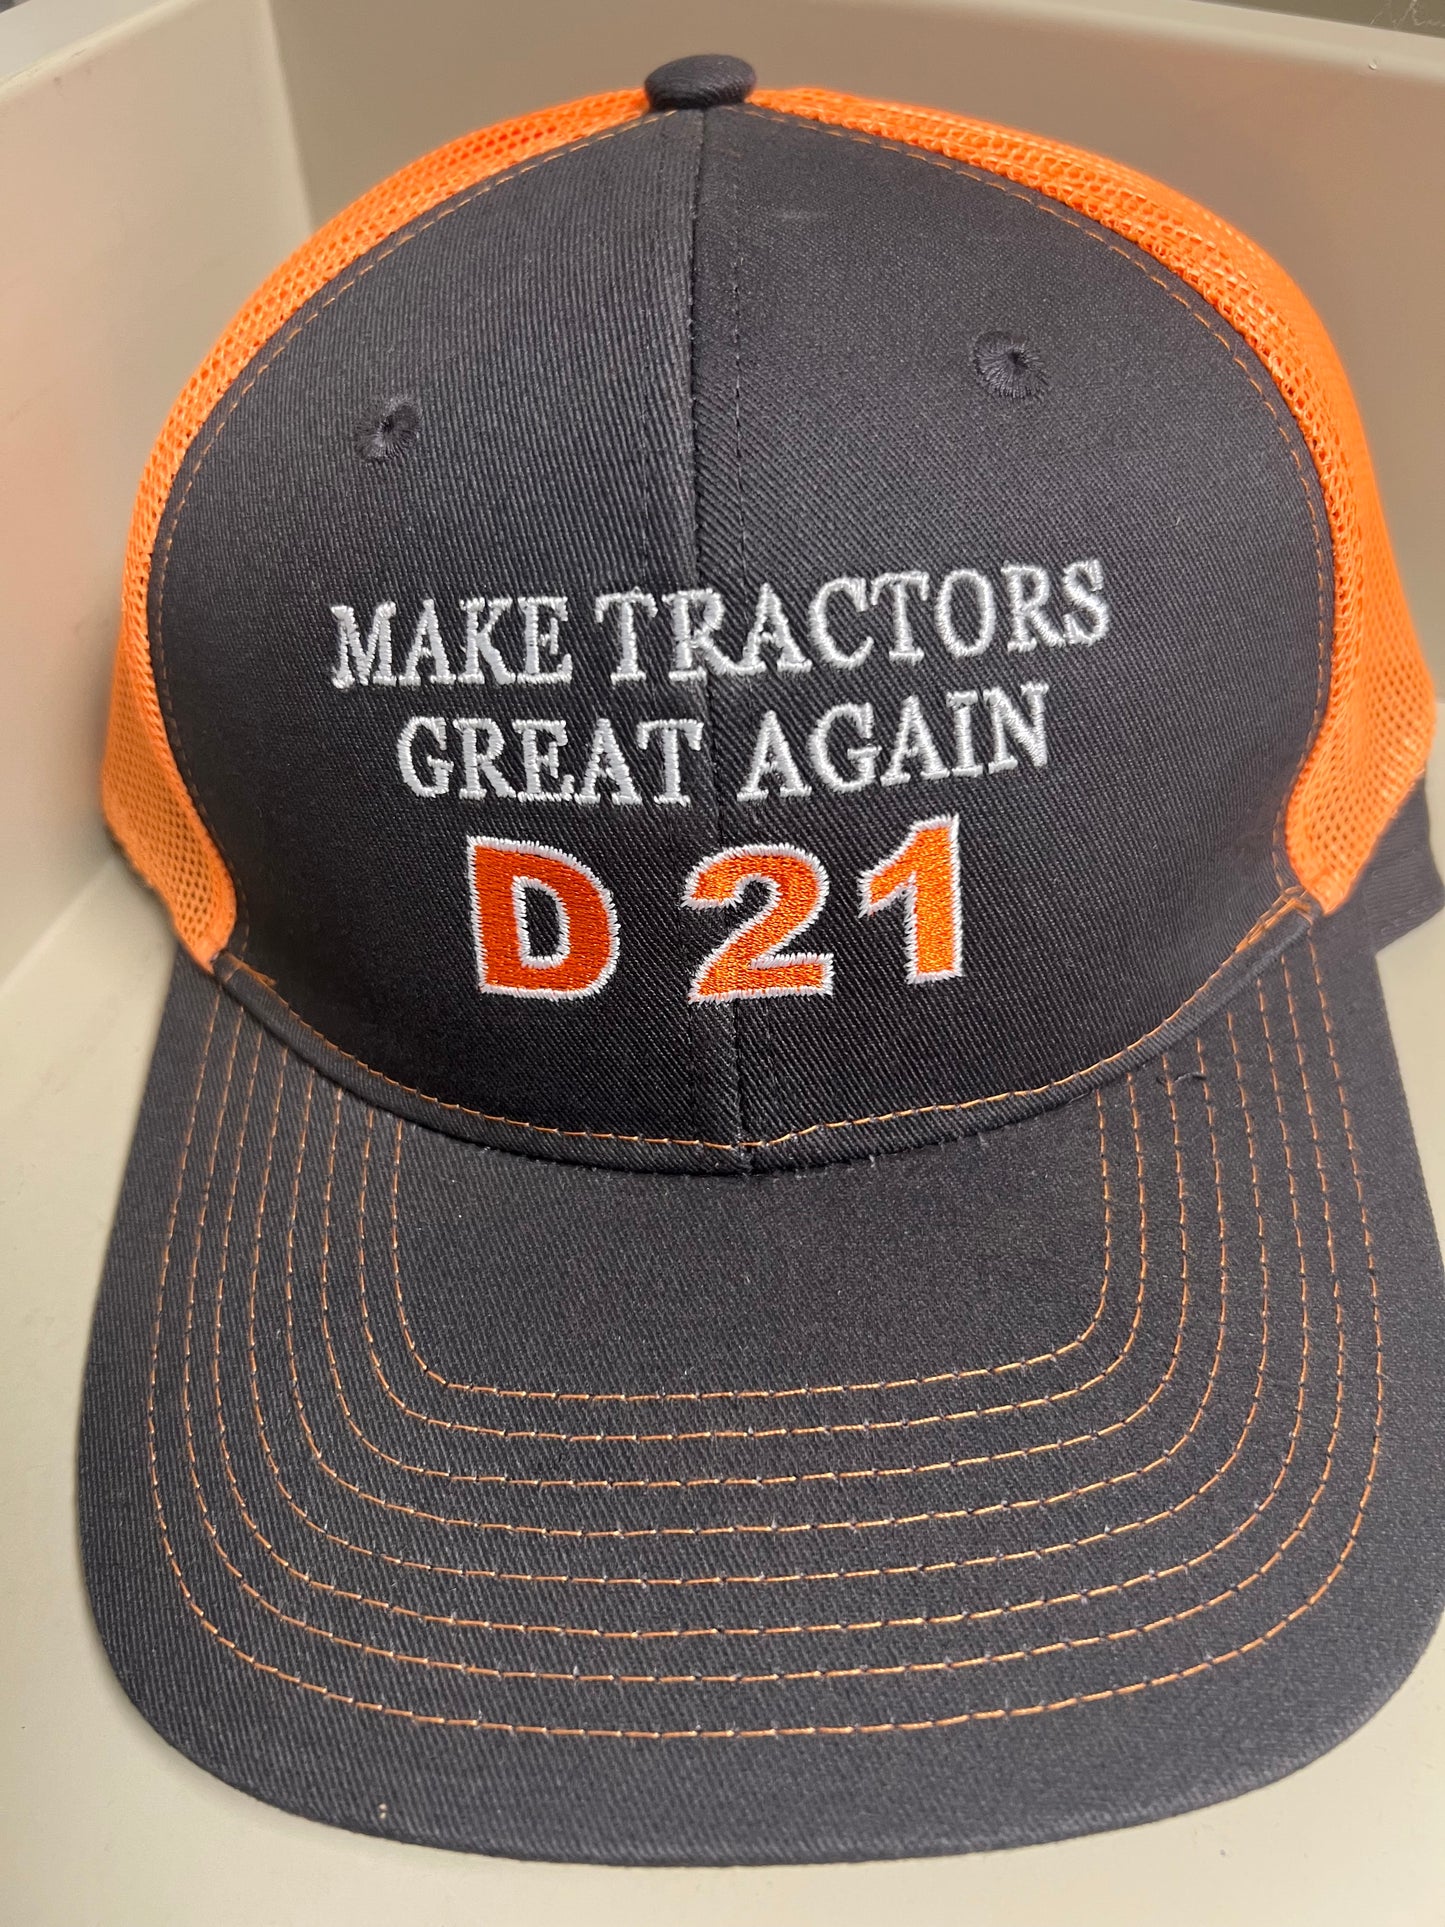 D21 Make Tractors Great Again Snapback